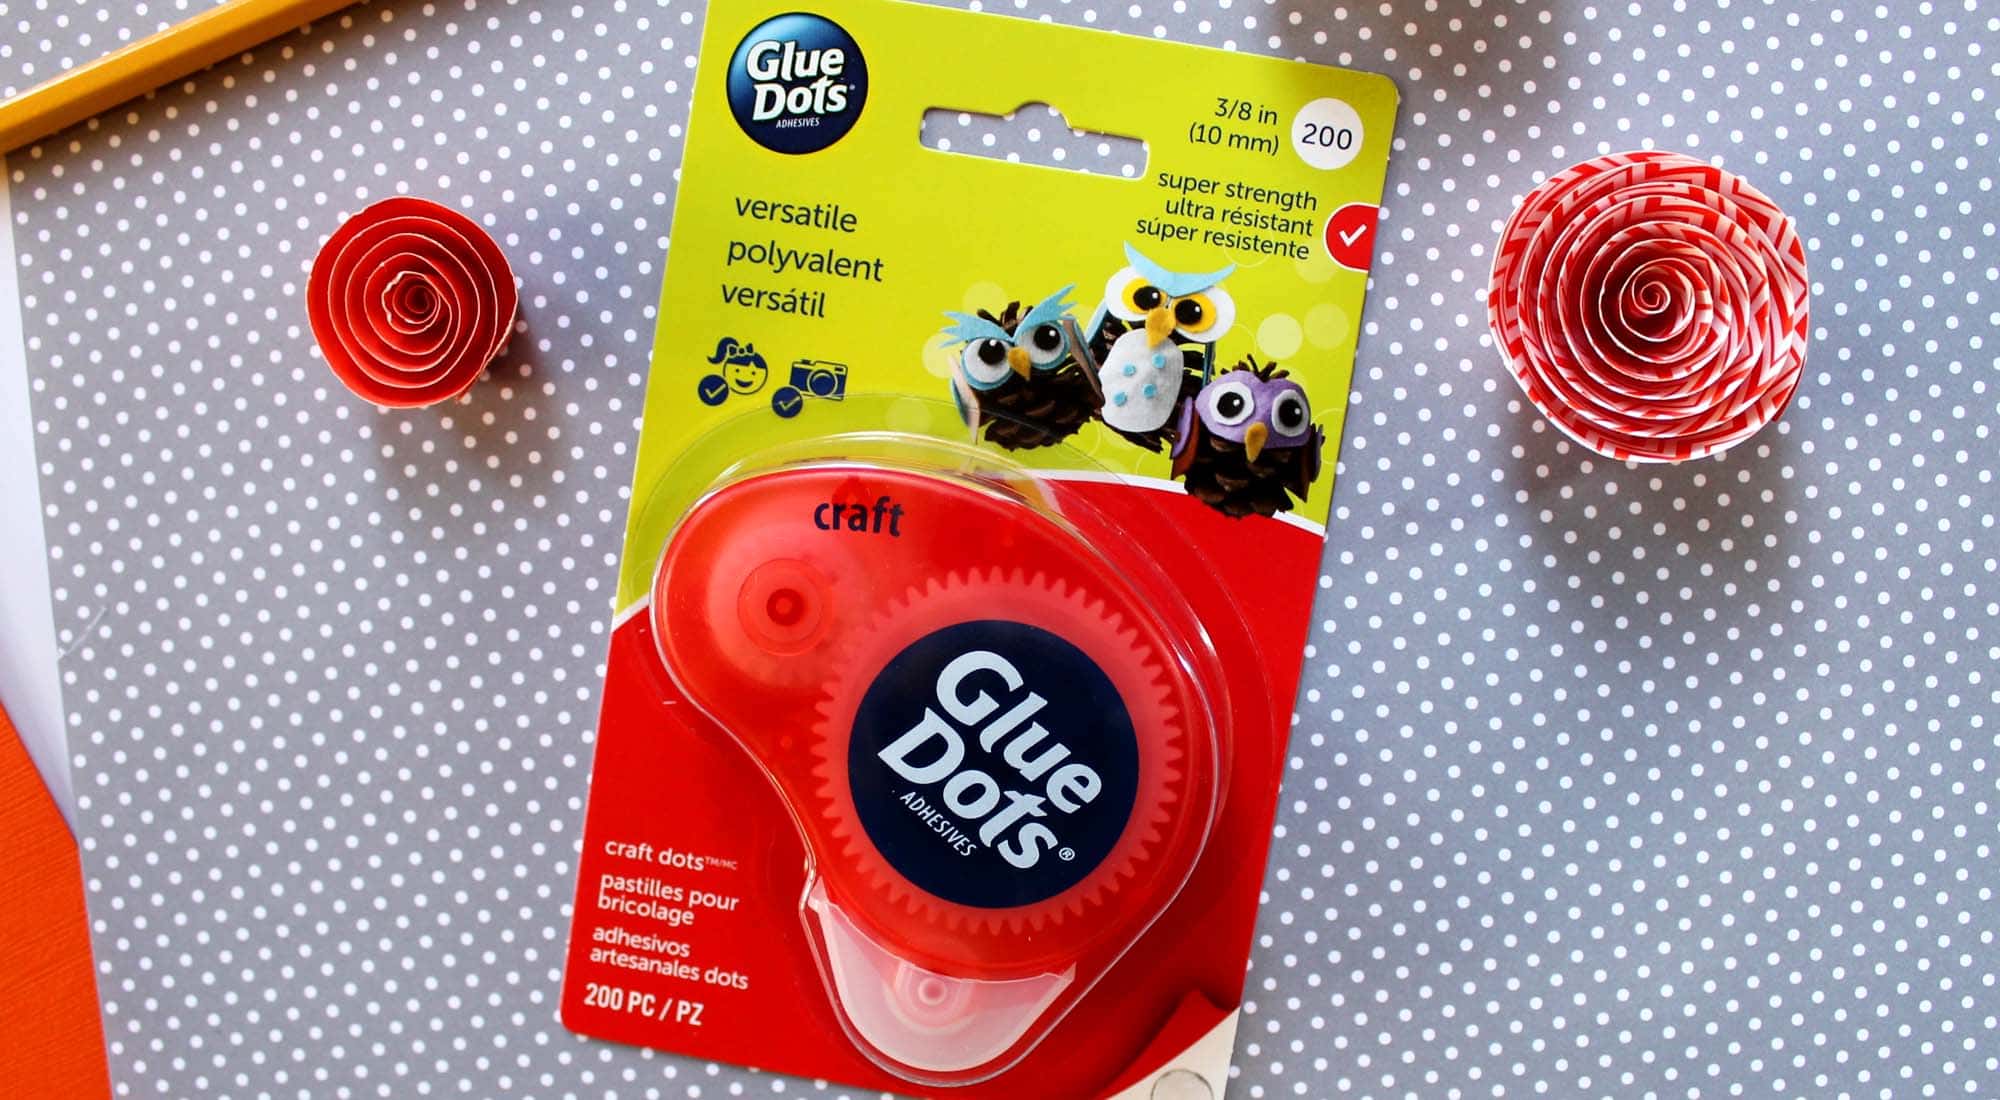 Glue Dots - packaging design case study - Catch-22 Creative